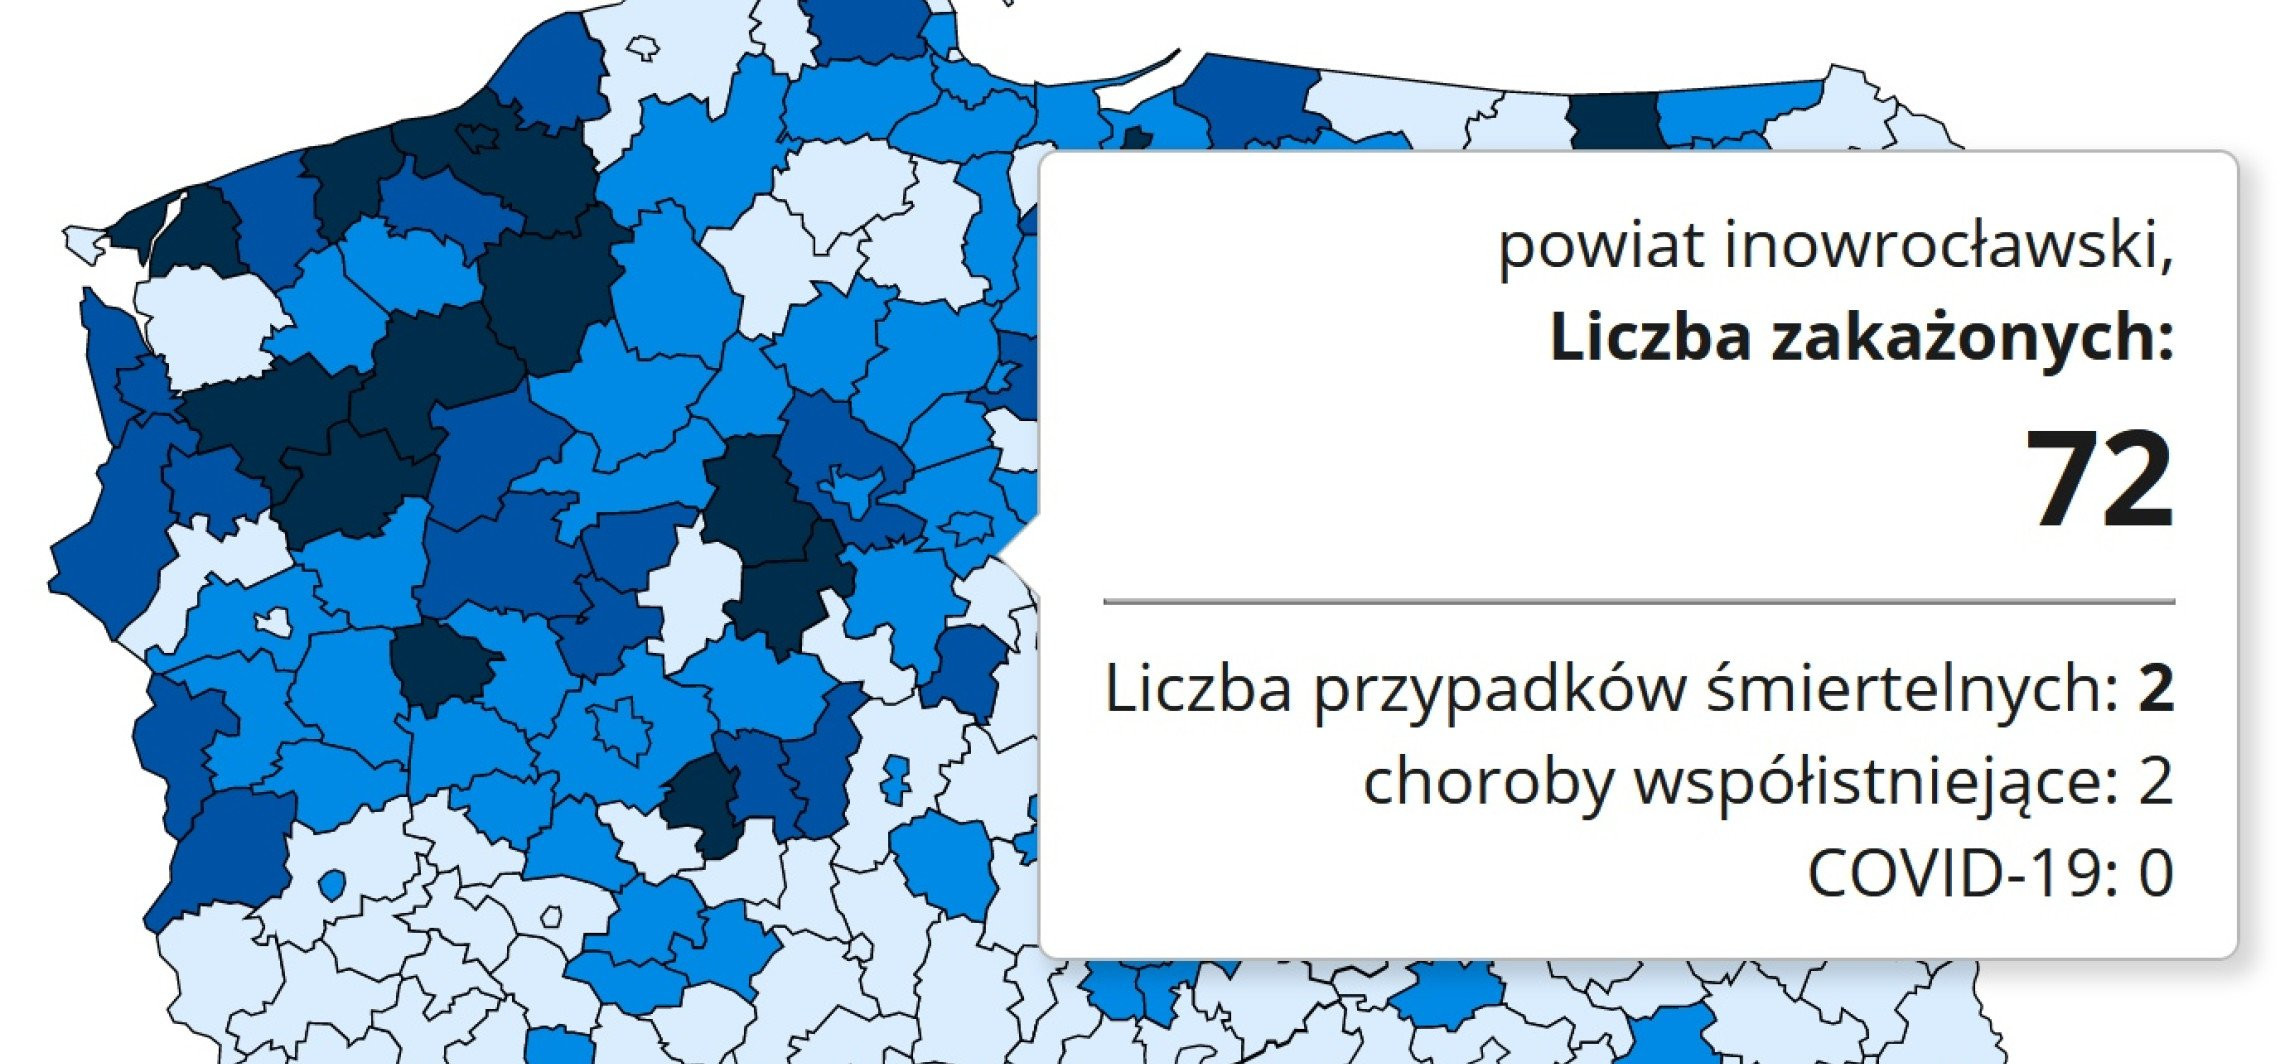 Inowrocław - Nowe dane o zakażeniach w regionie